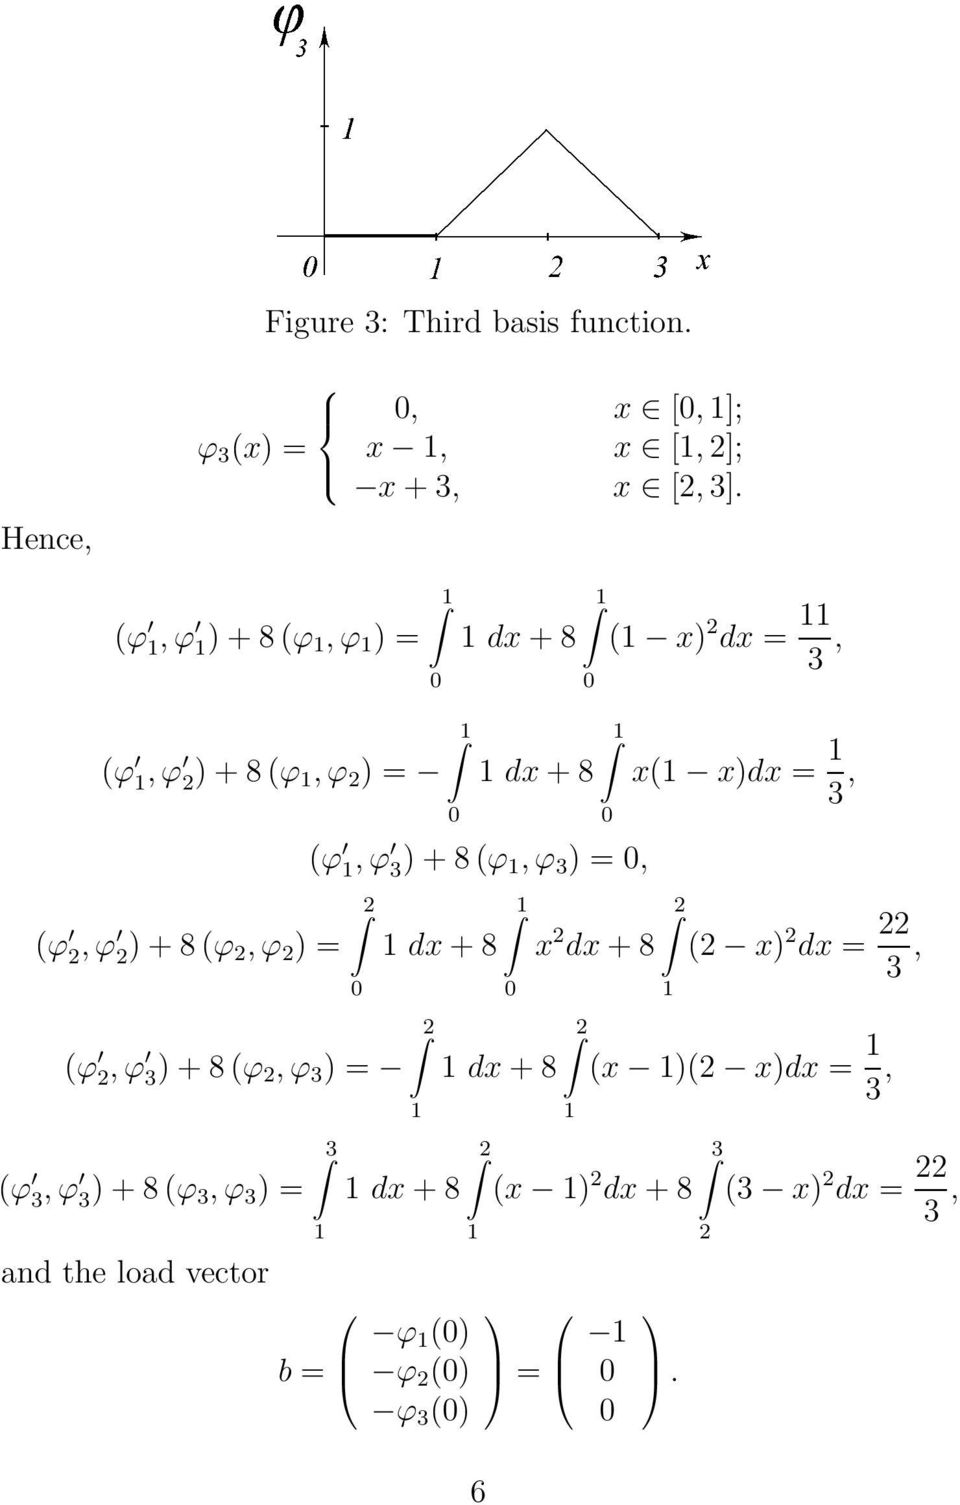 ) + 8 (ϕ, ϕ 3 ) =, 2 2 (ϕ 2, ϕ 3 ) + 8 (ϕ 2, ϕ 3 ) = (ϕ 3, ϕ 3 ) + 8 (ϕ 3, ϕ 3 ) = and the load vector 3 b = dx +